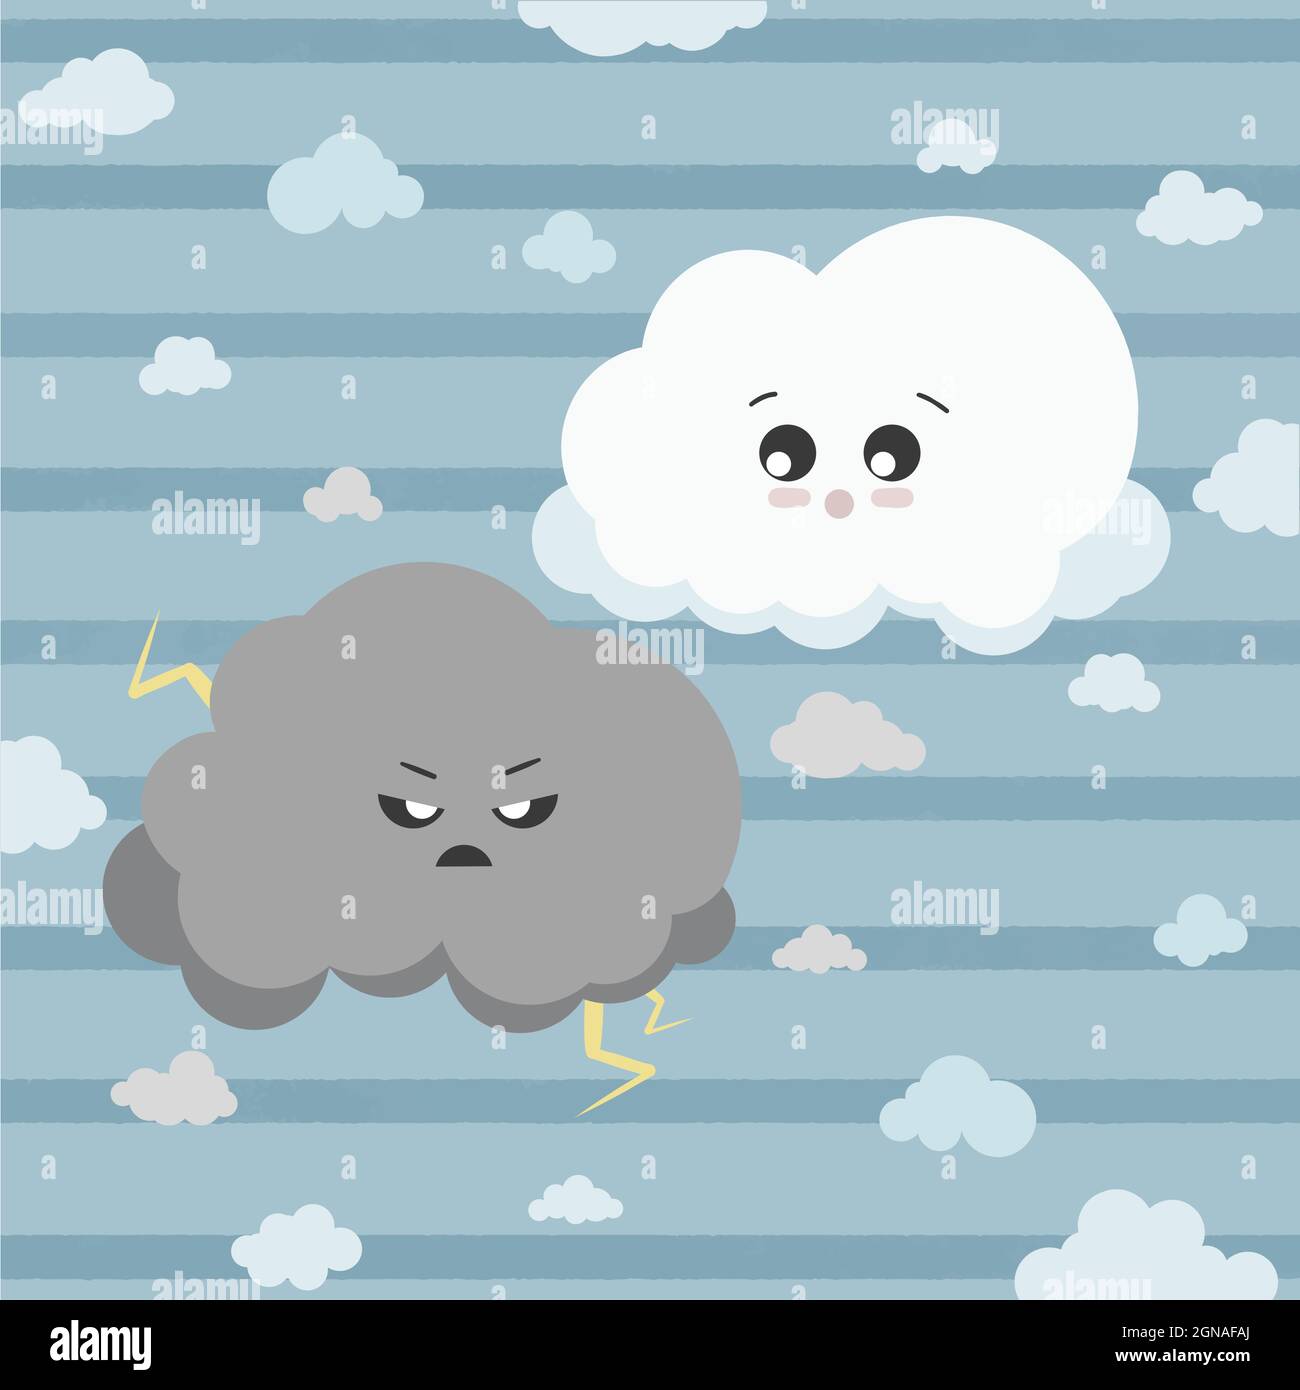 Nube di tuono carina e soffice, insieme a piccole nuvole giocose intorno. Kawaii in stile nuvole nel cielo. Illustrazione vettoriale isolata su sfondo blu cielo Illustrazione Vettoriale